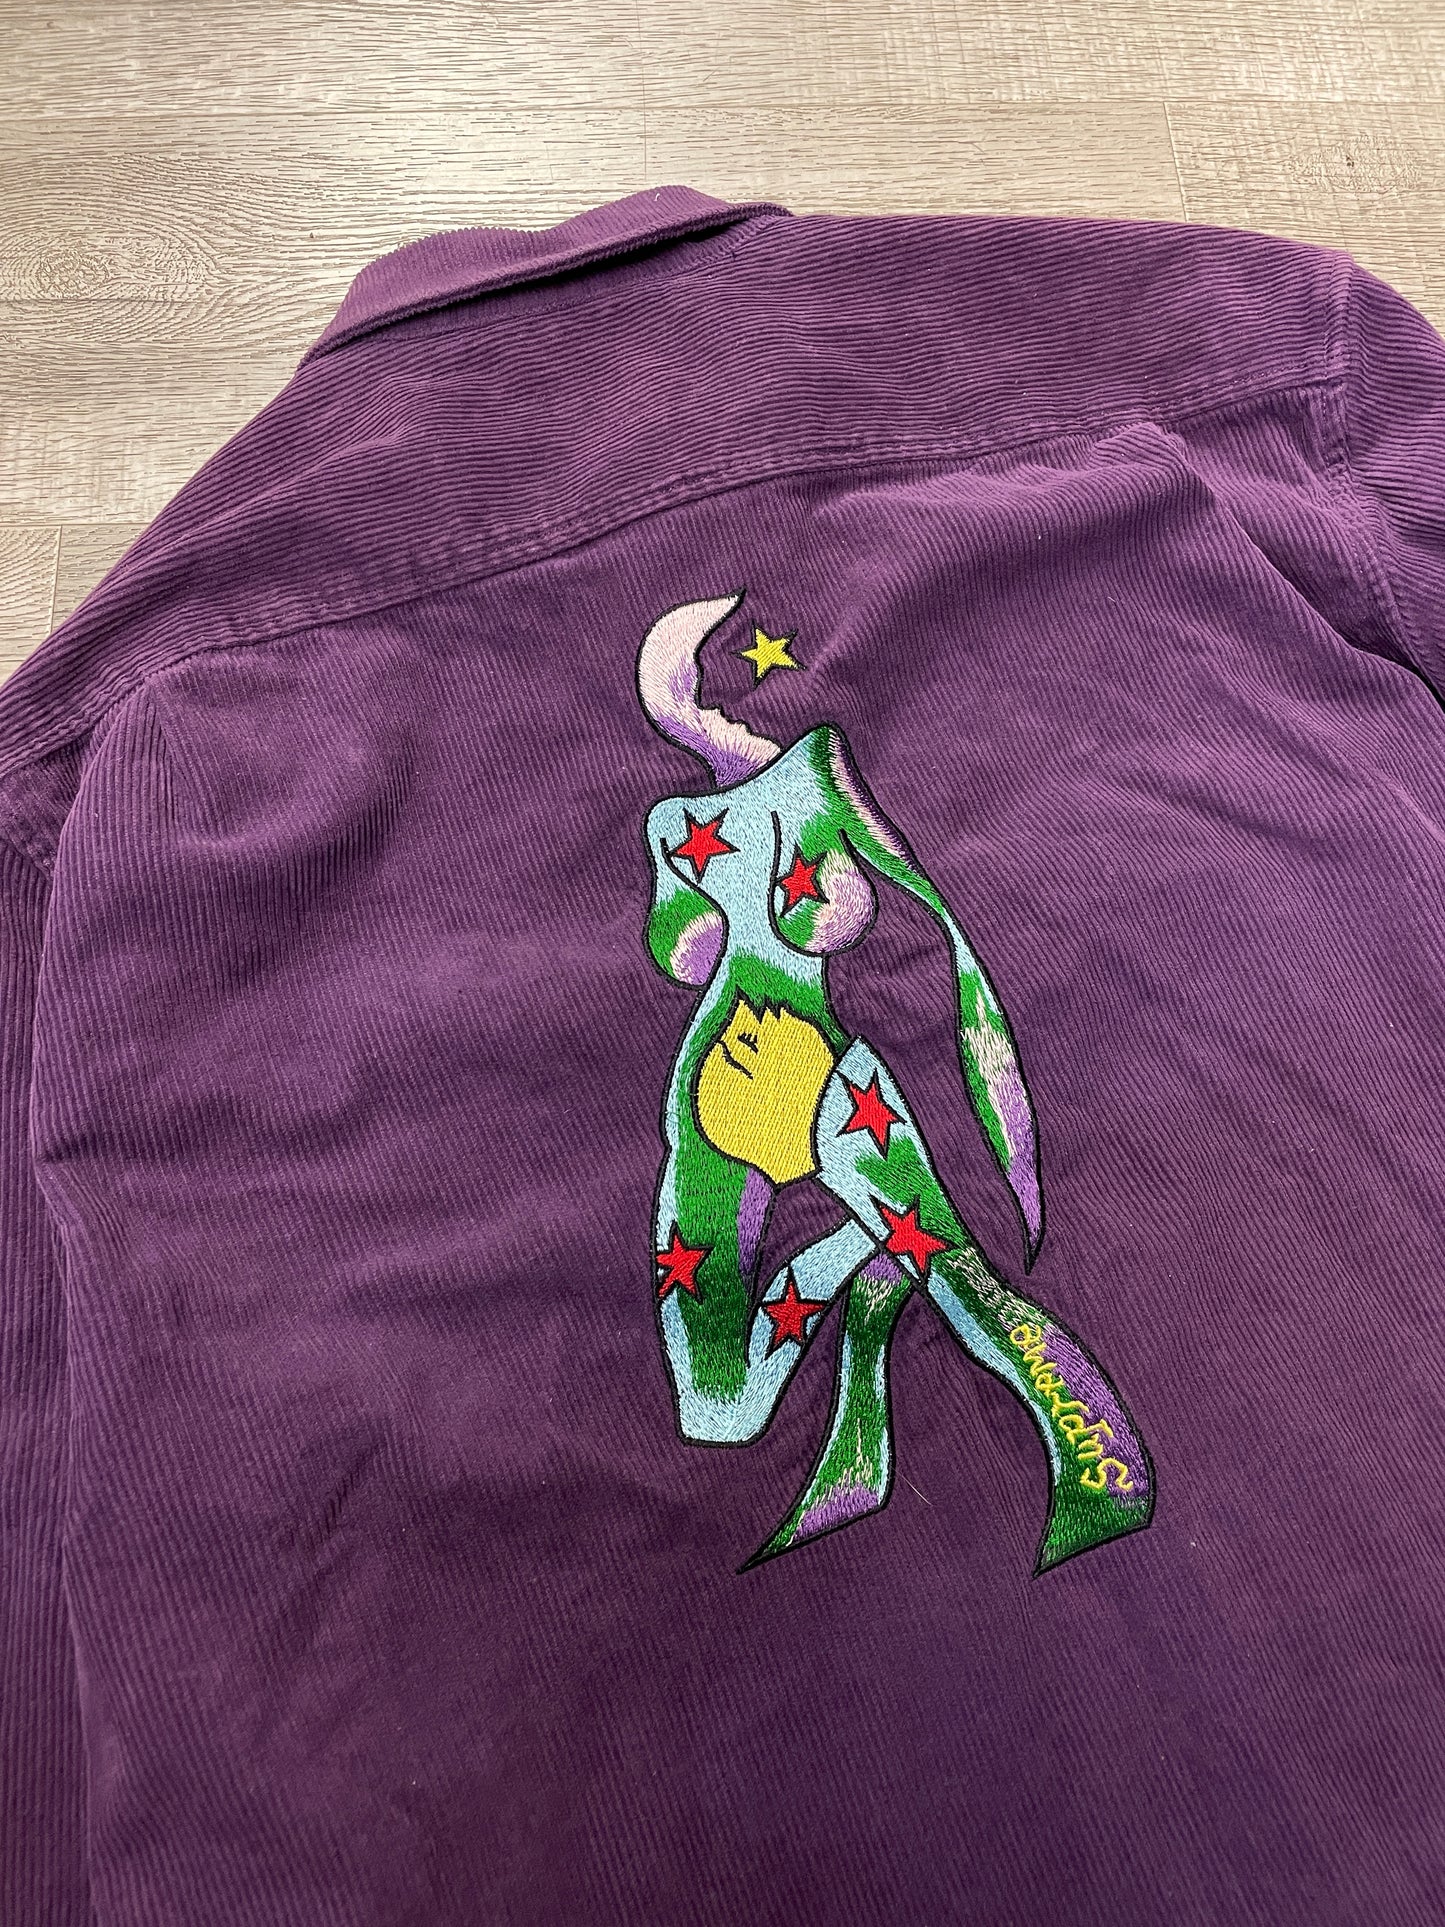 Supreme Corduroy Shirt Purple Embroidered